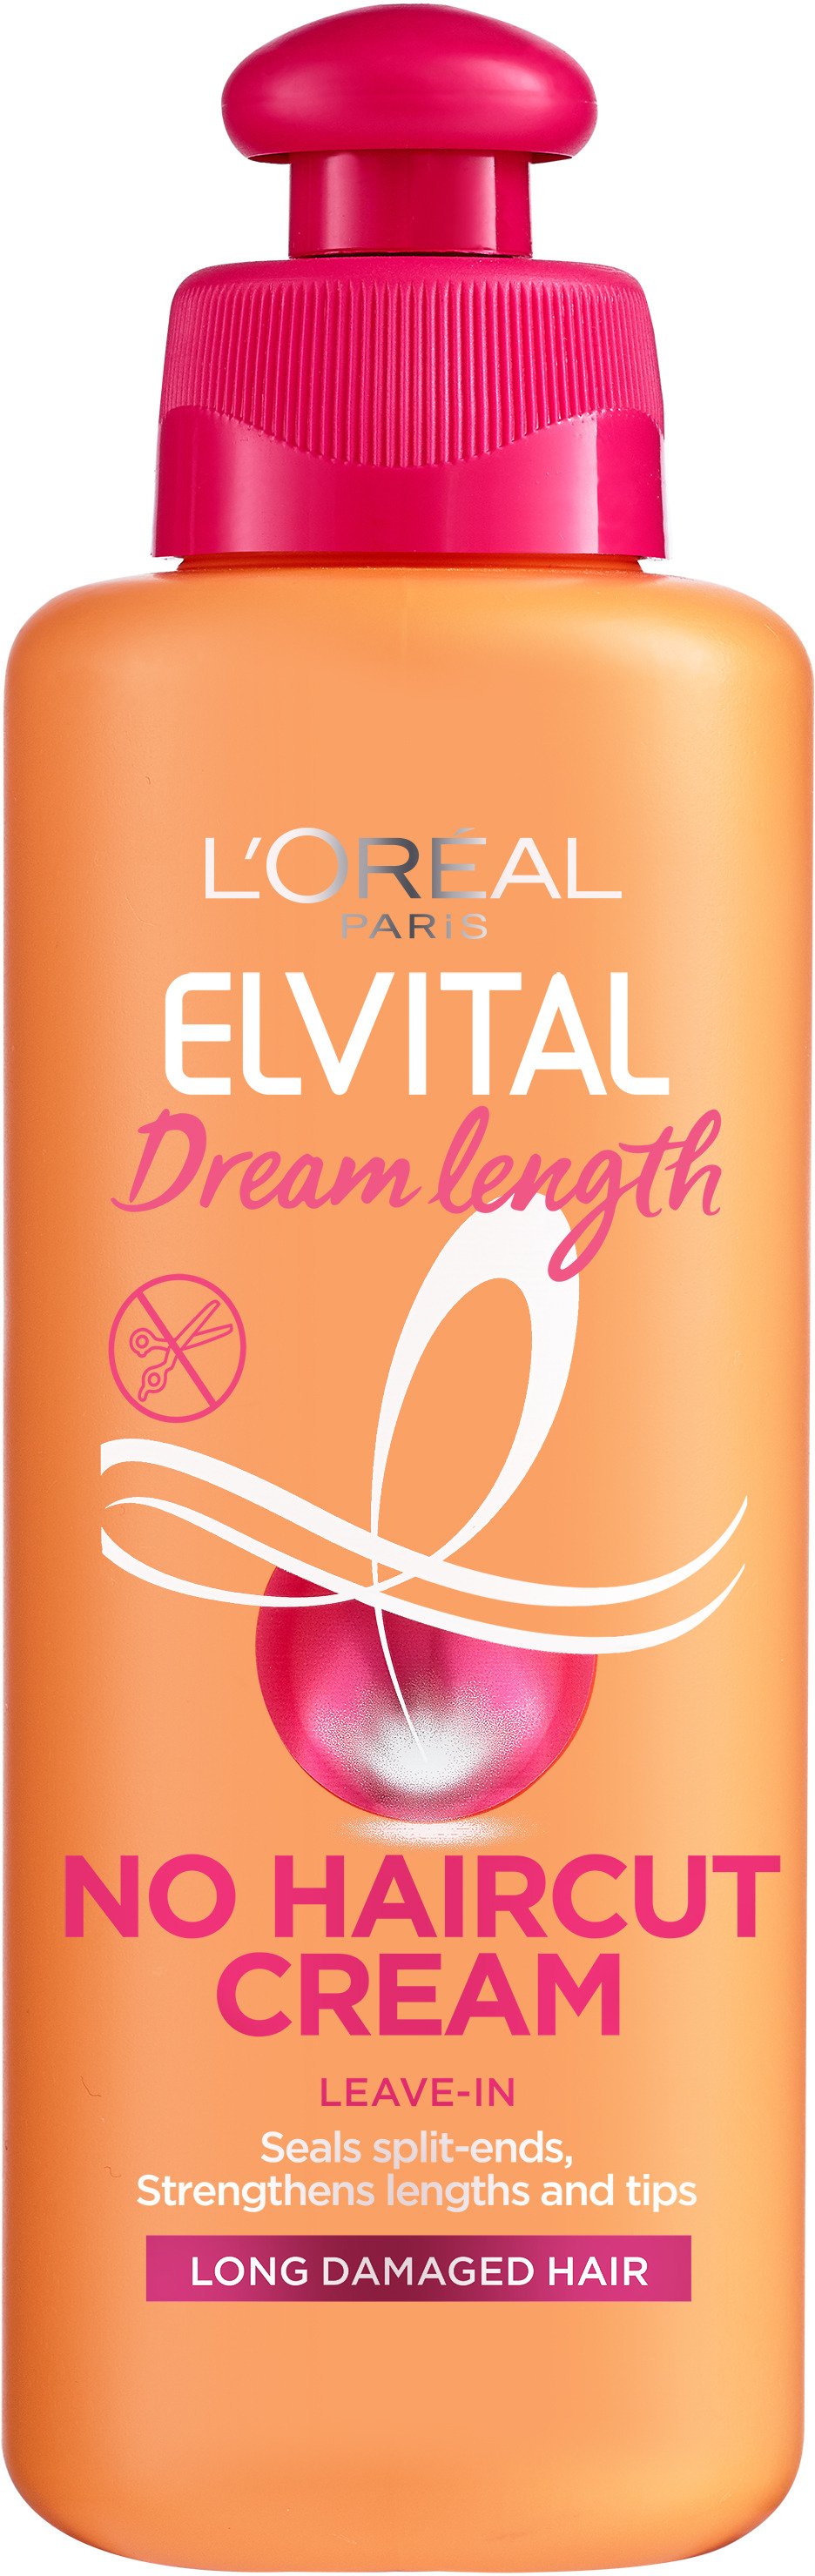 L'Oréal Paris Elvital Dream Lengths No Hair Cut Cream 200 ml